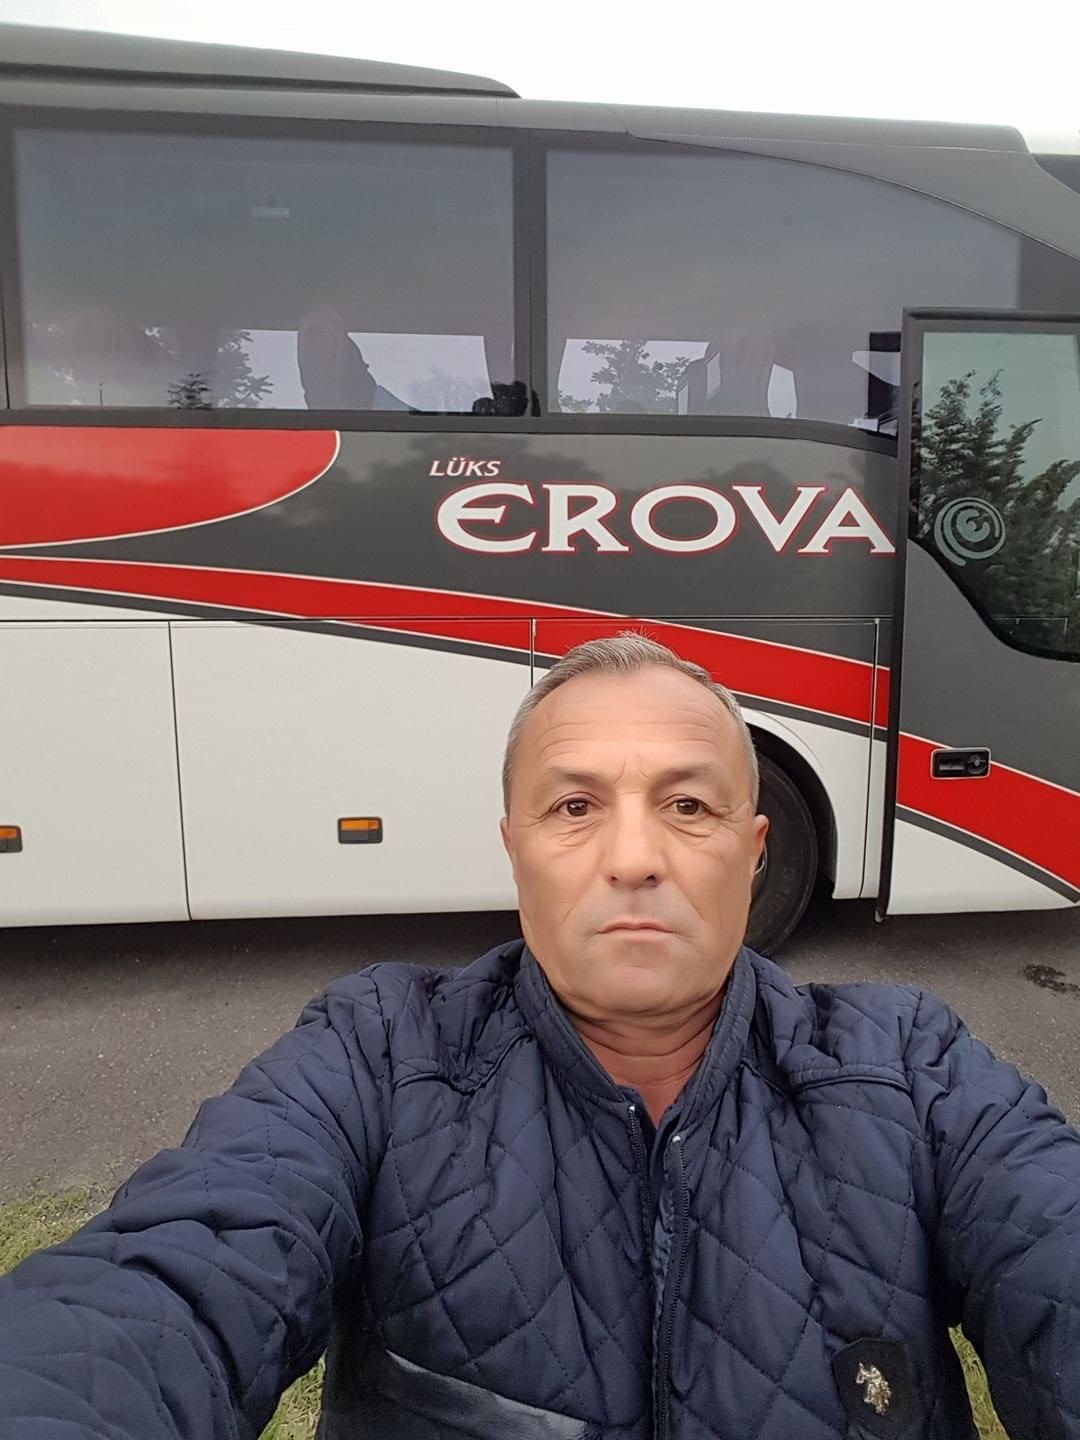 Amasya’da otobüs kazasında ölen 6 kişinin isimleri belirlendi